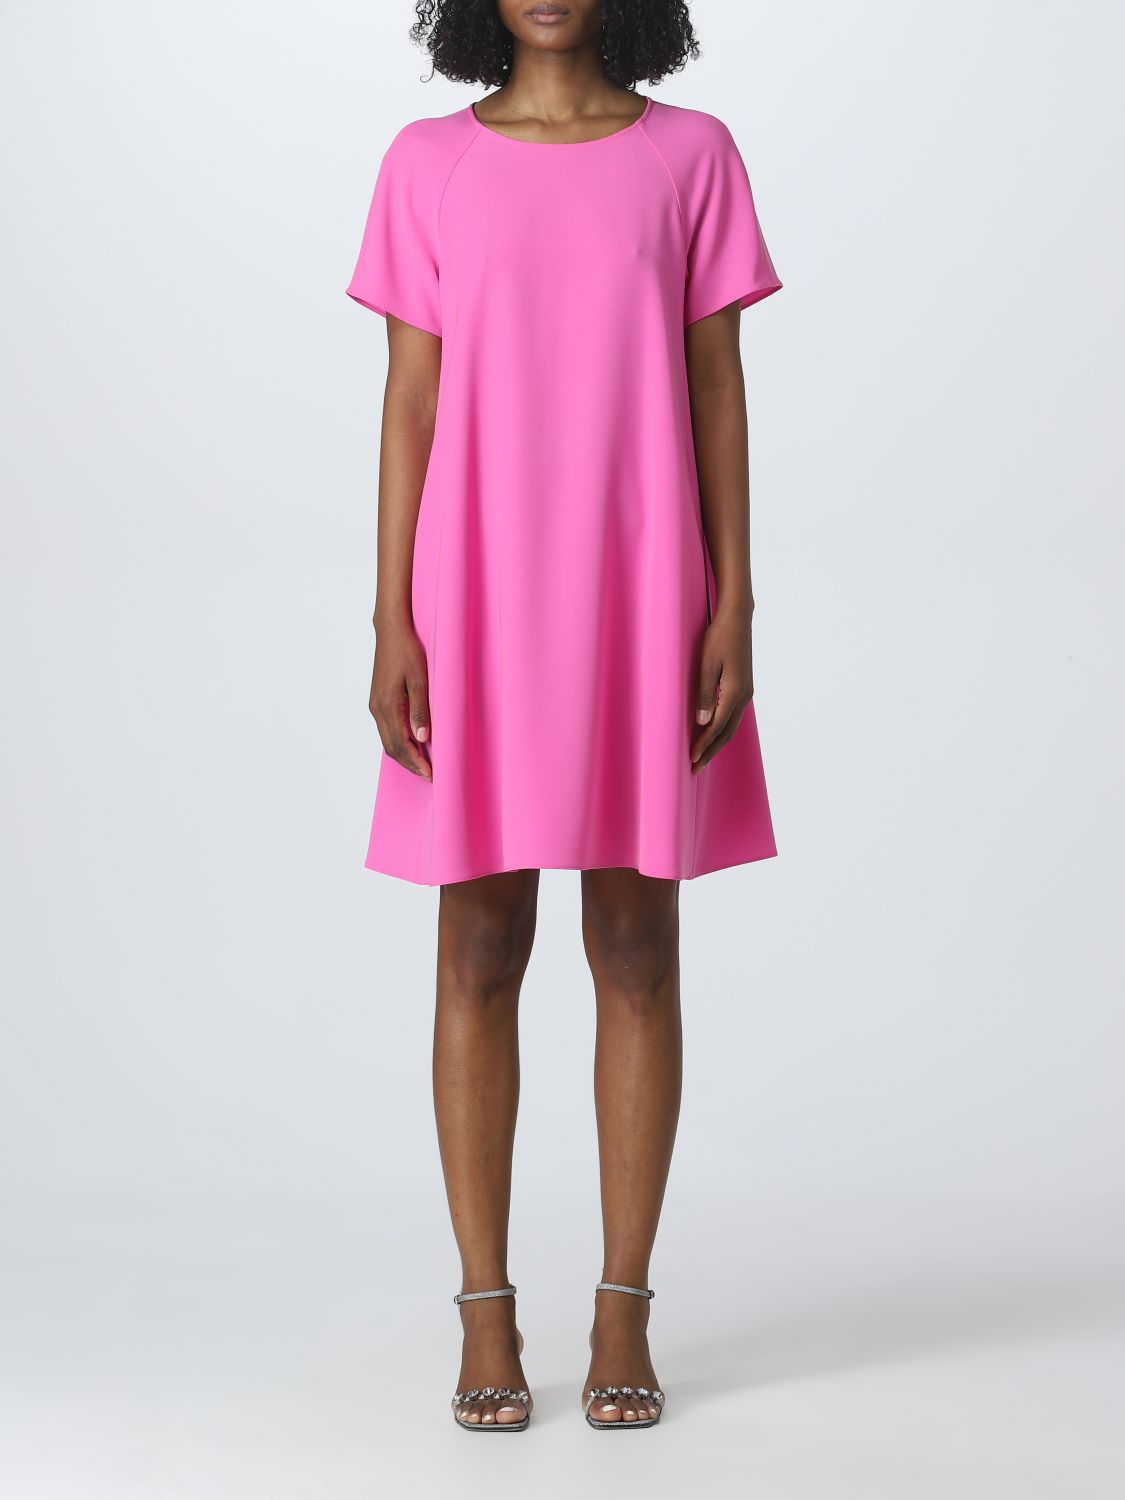 エンポリオ・アルマーニのコーラル・ピンクのドレス